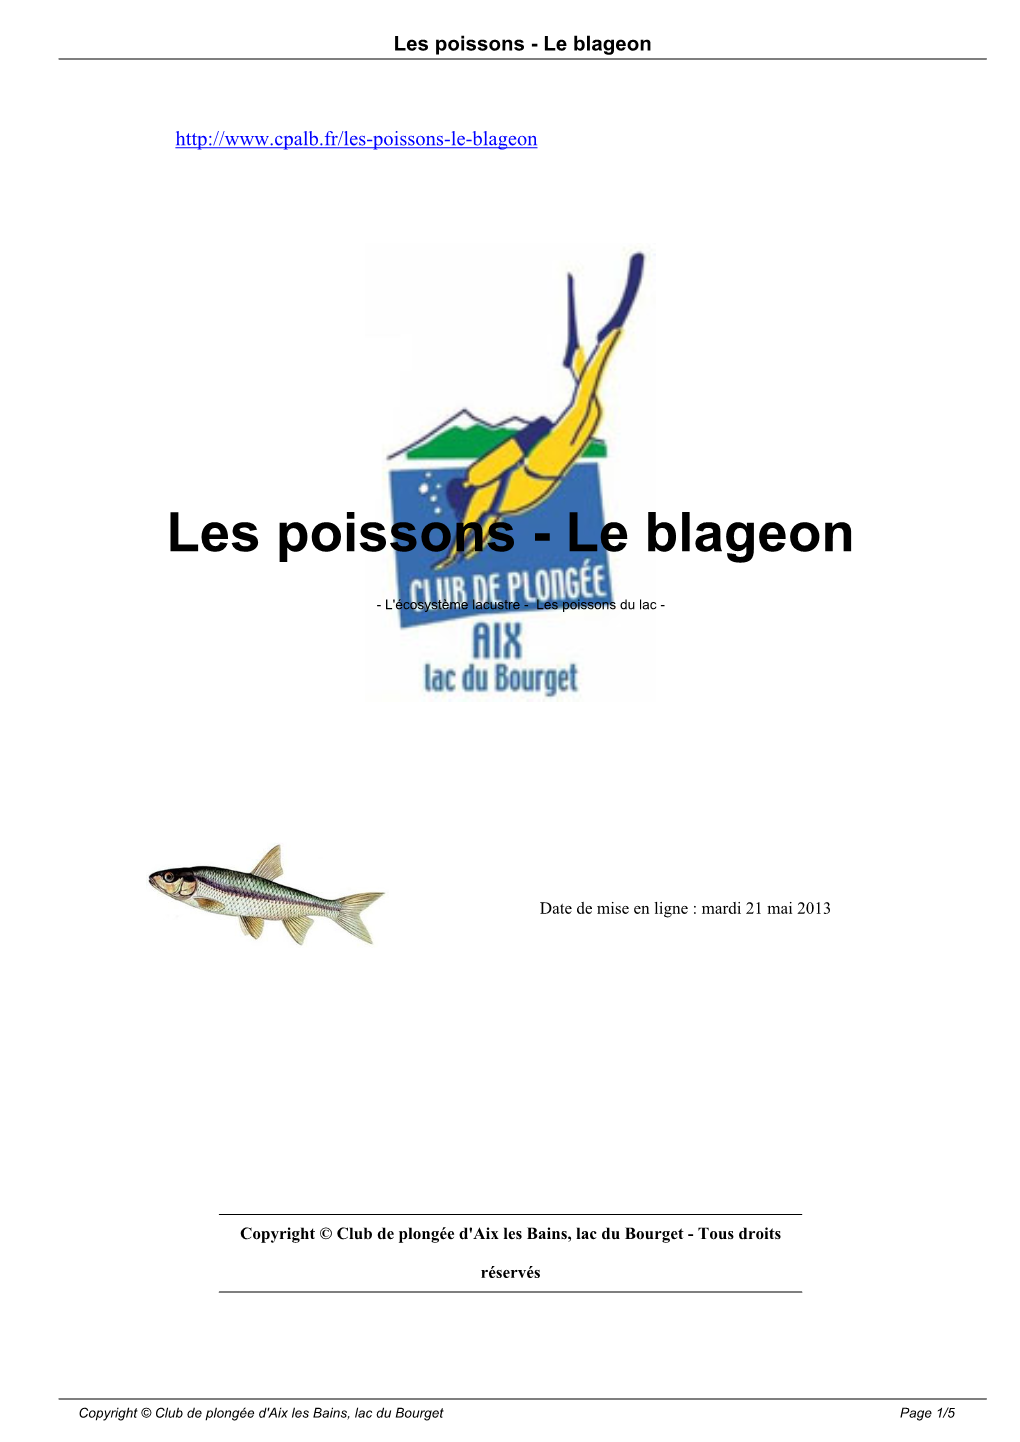 Les Poissons - Le Blageon